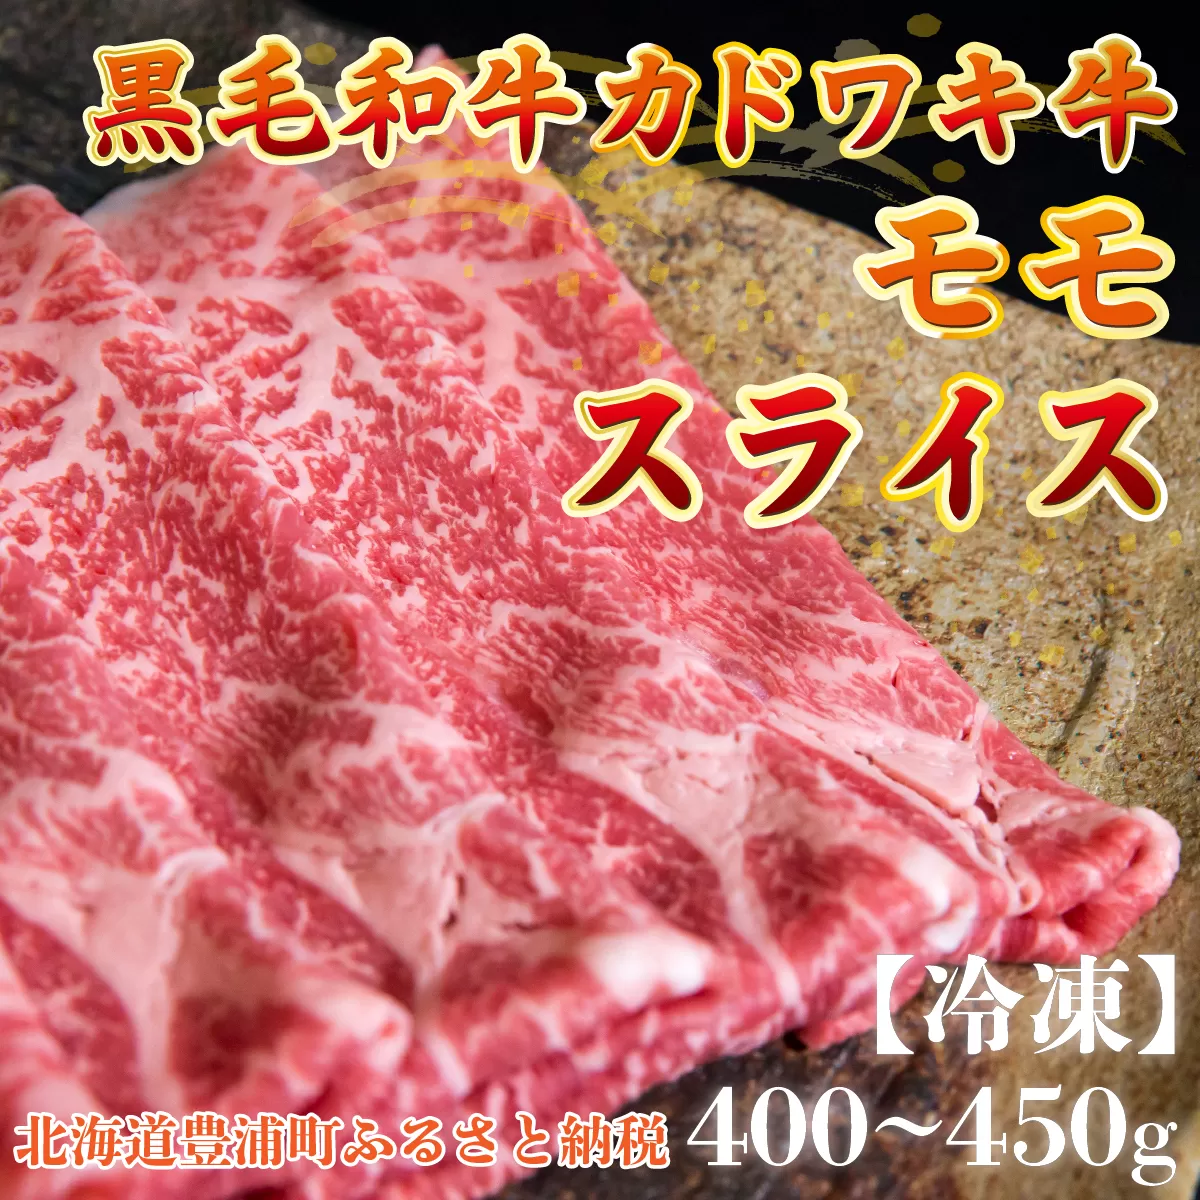 北海道 黒毛和牛 カドワキ牛 モモ スライス 400g〜450g【冷凍】 TYUAE010